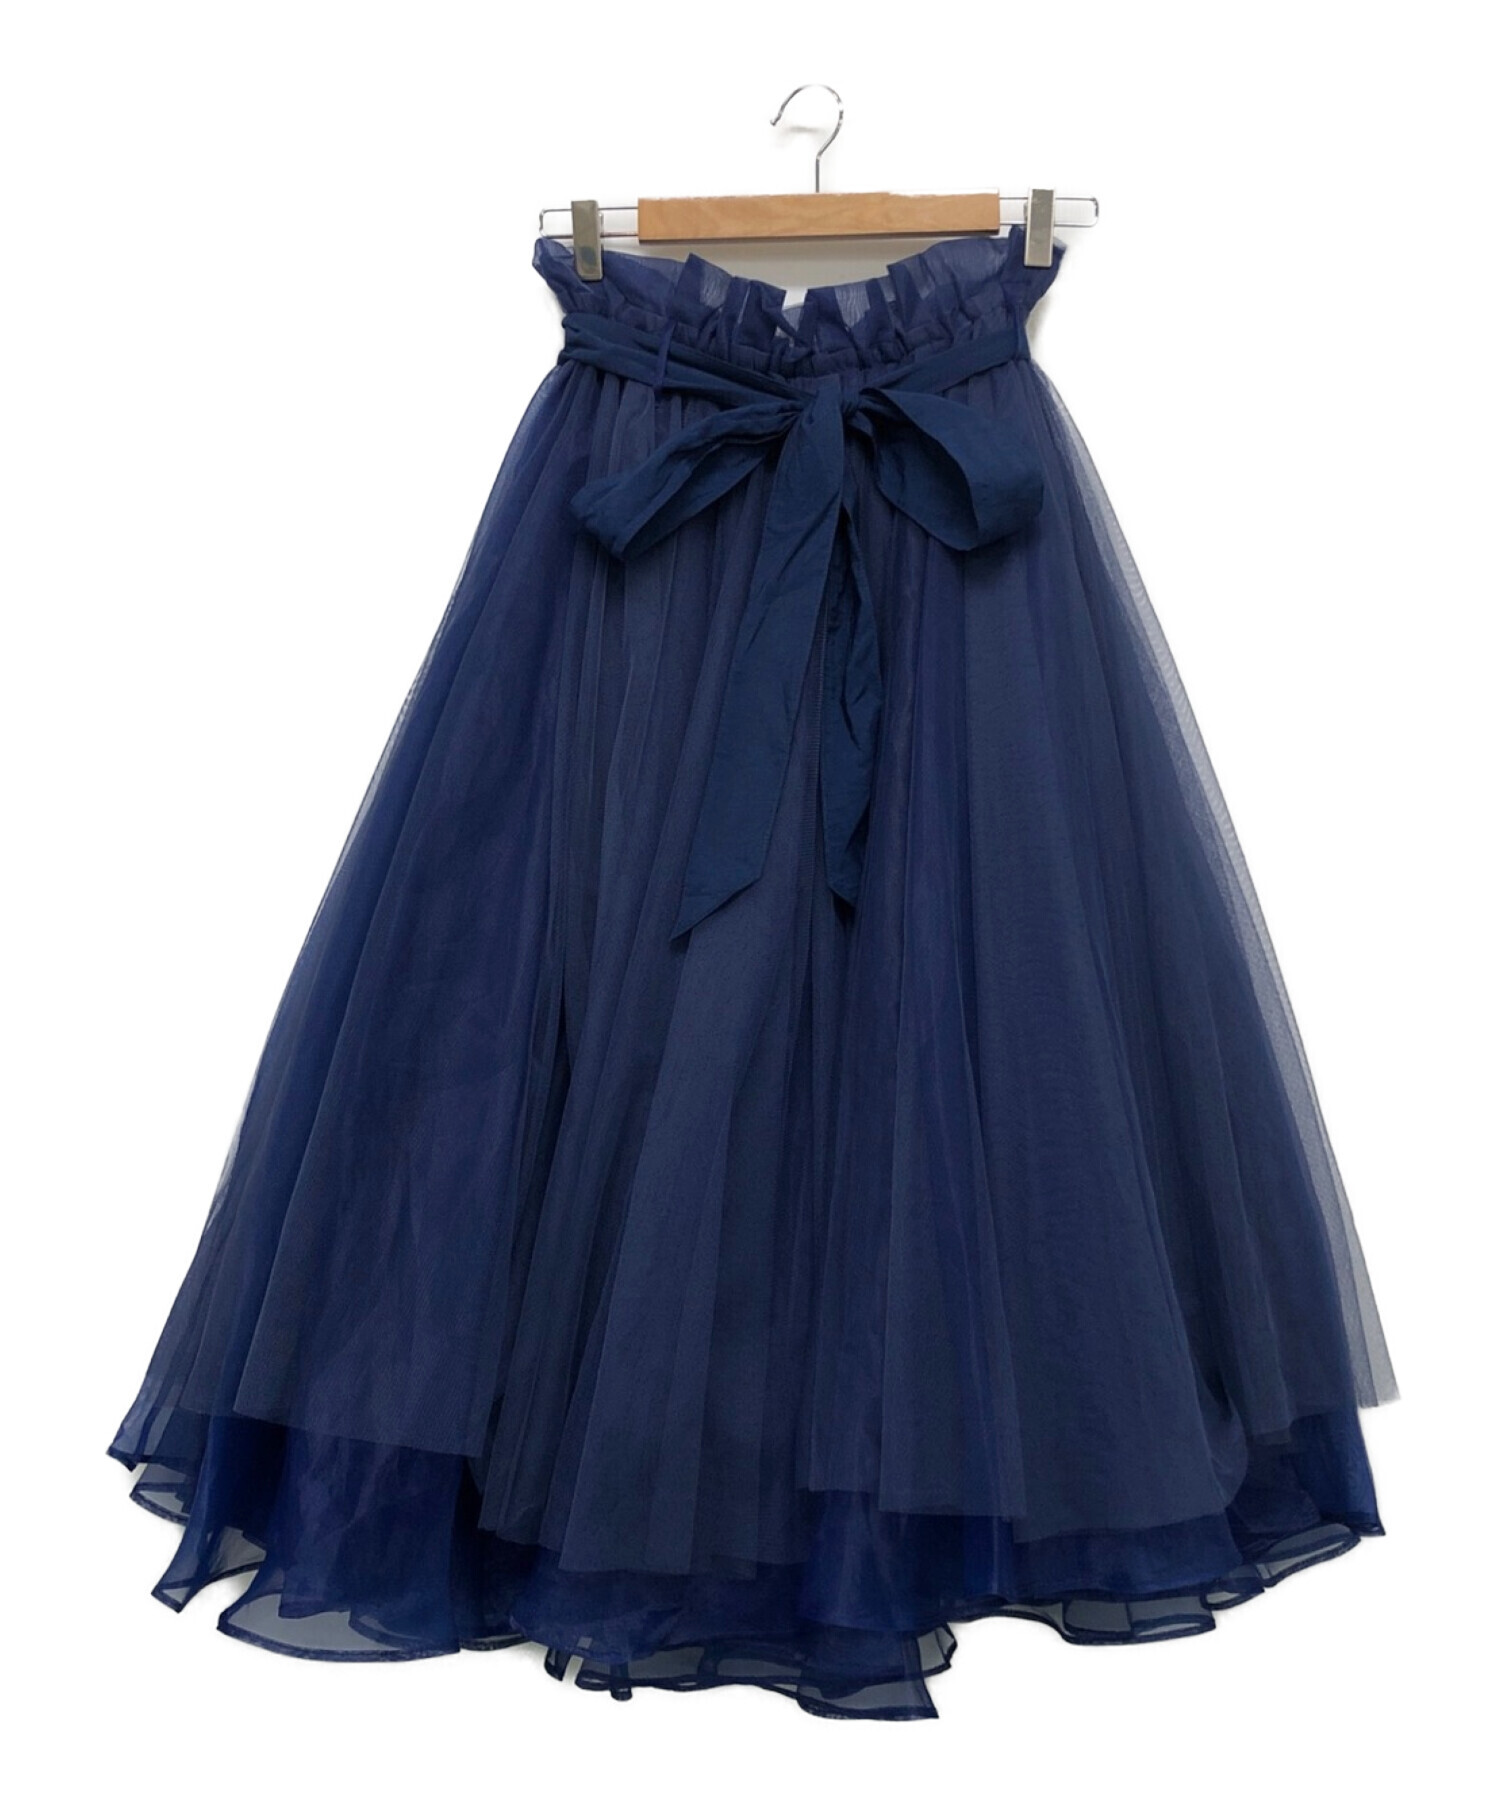 la belle Etude (ラベルエチュード) ボリュームロングチュール×オーガンジースカート ネイビー サイズ:FREE